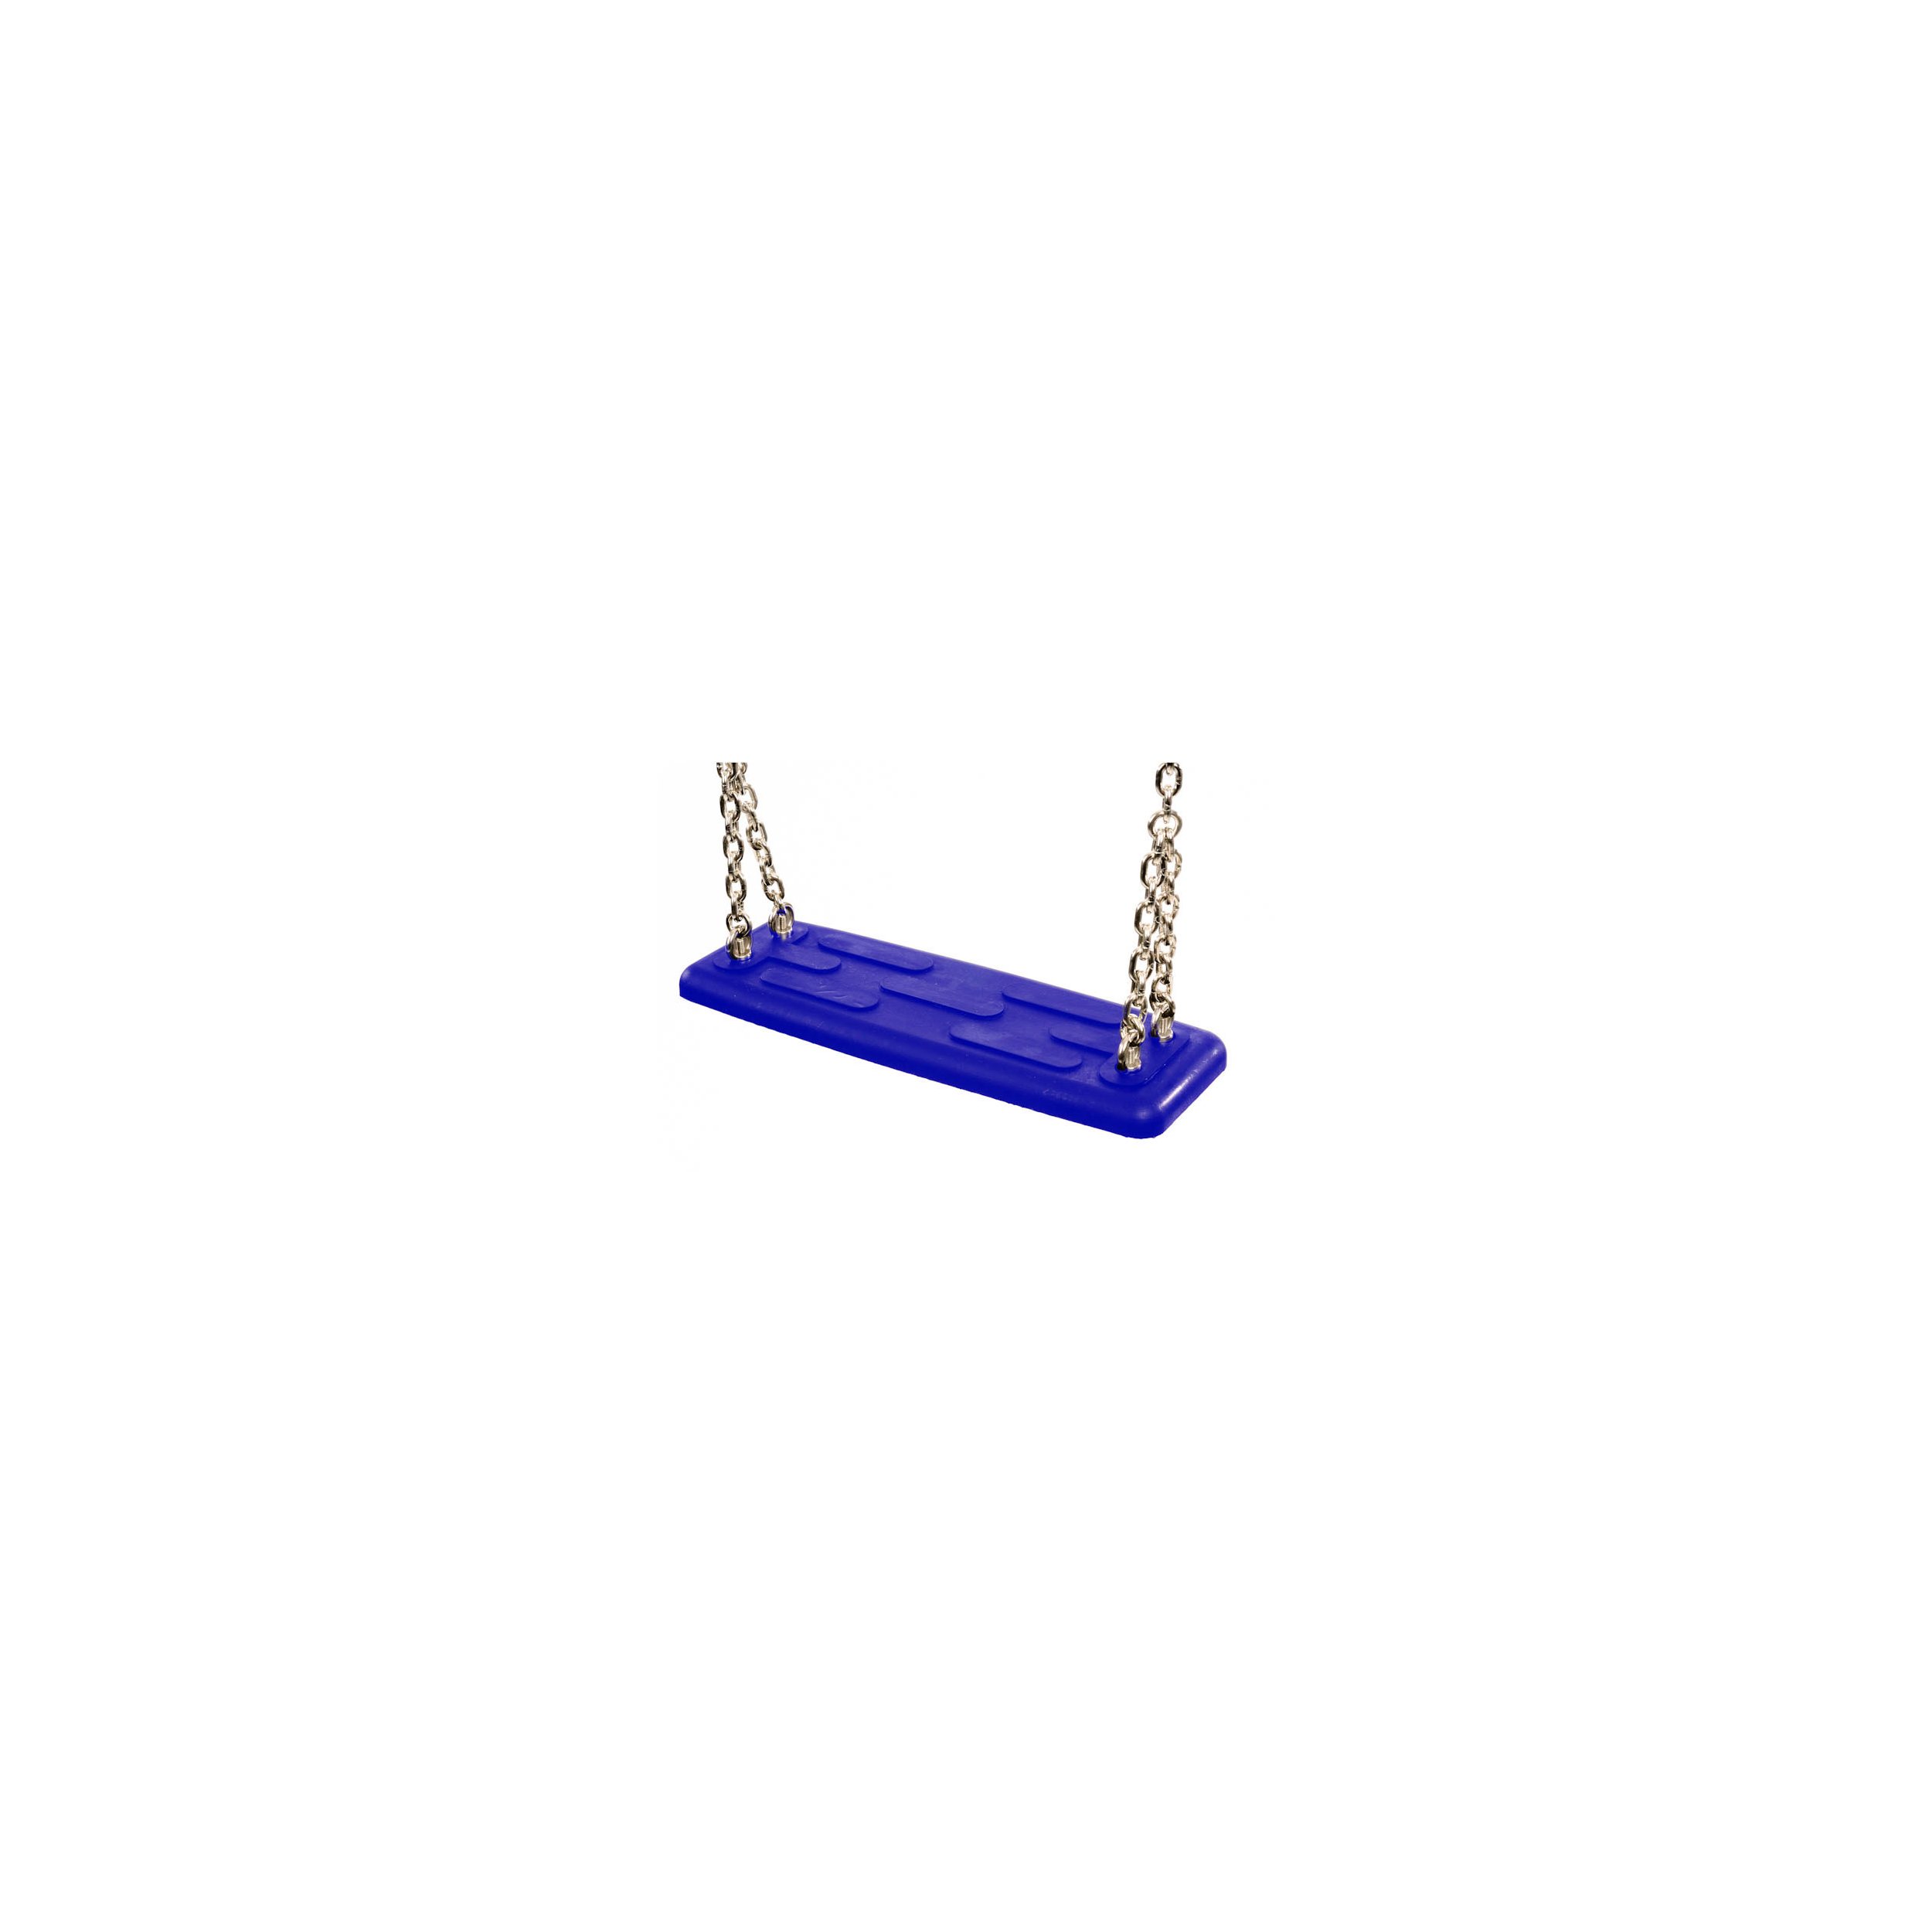 Siège de balançoire de sécurité type 2 bleu Acier inoxydable AISI 316 200 cm